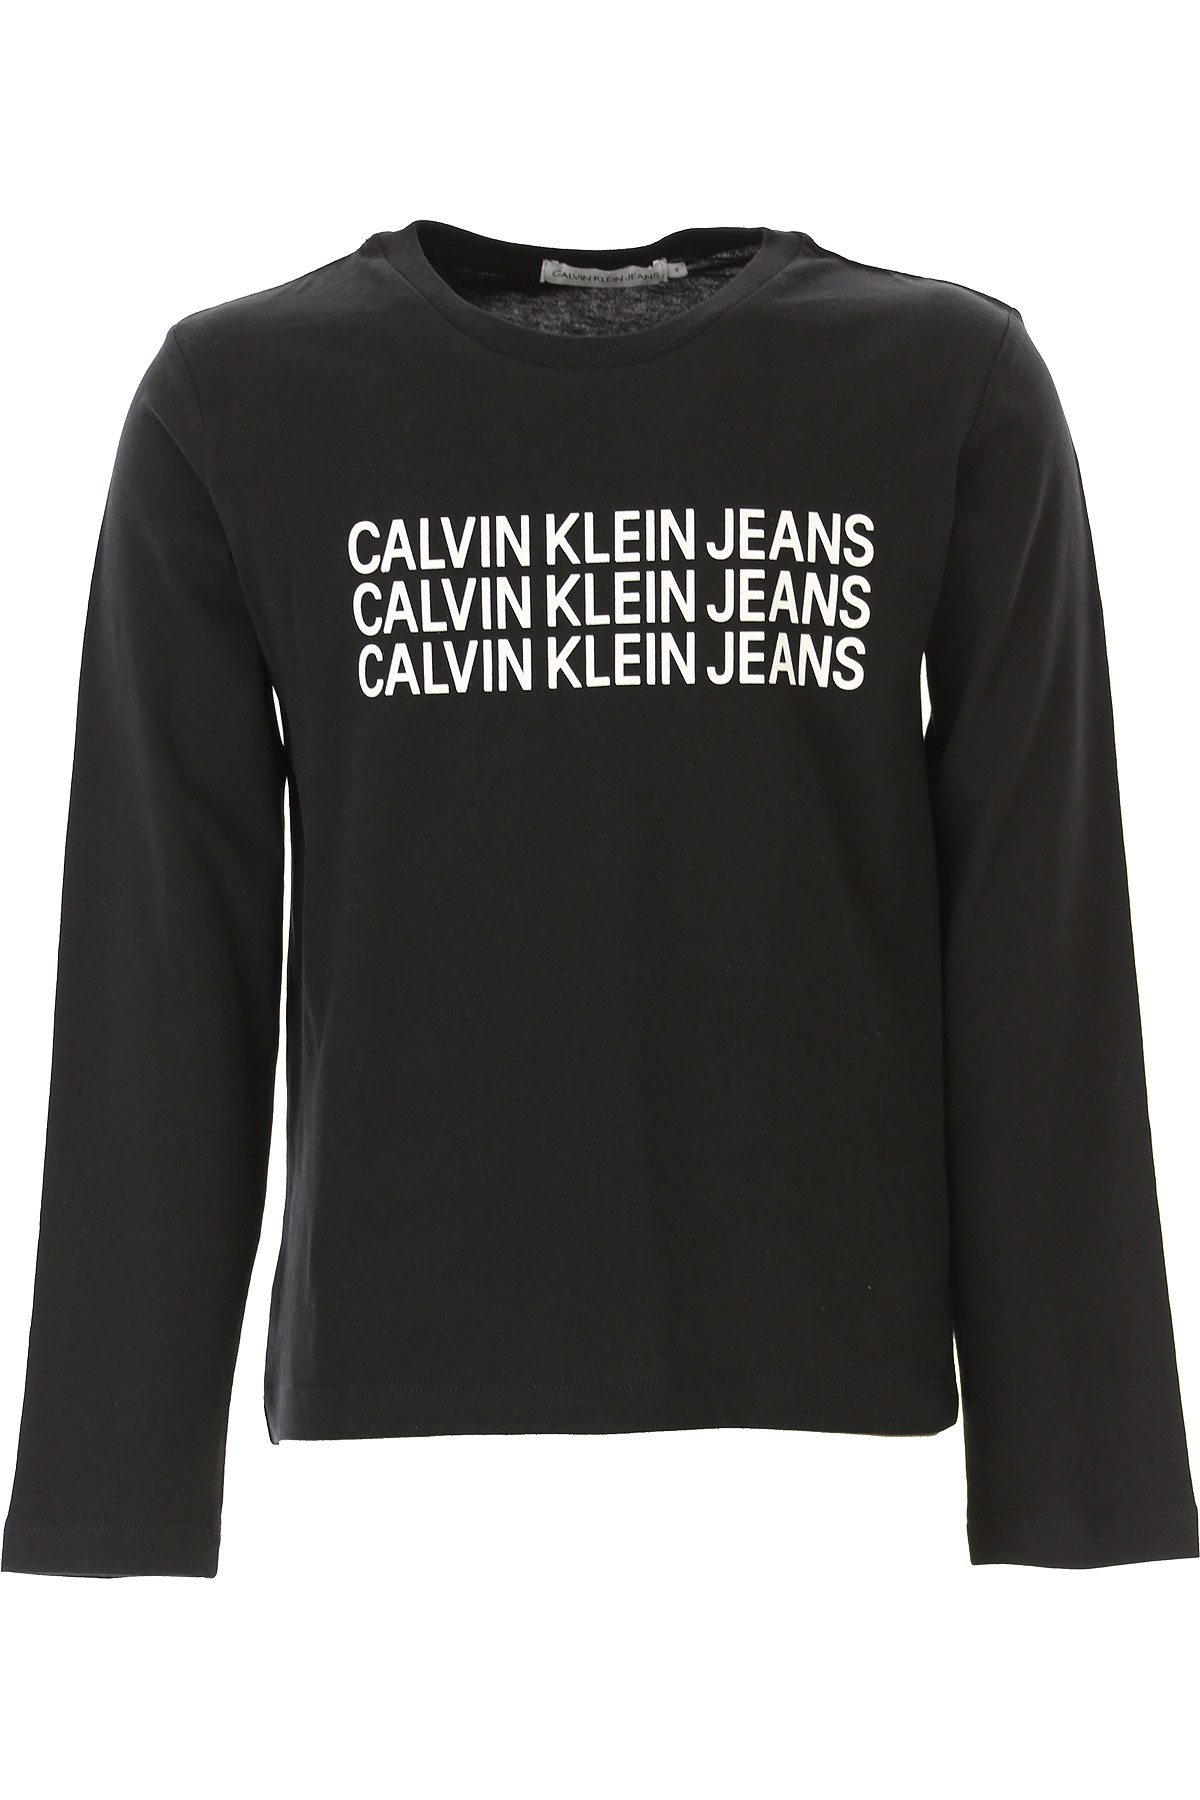 Calvin Klein Kinder T-Shirt für Jungen Günstig im Sale, Schwarz, Baumwolle, 2017, 10Y 14Y 6Y 8Y